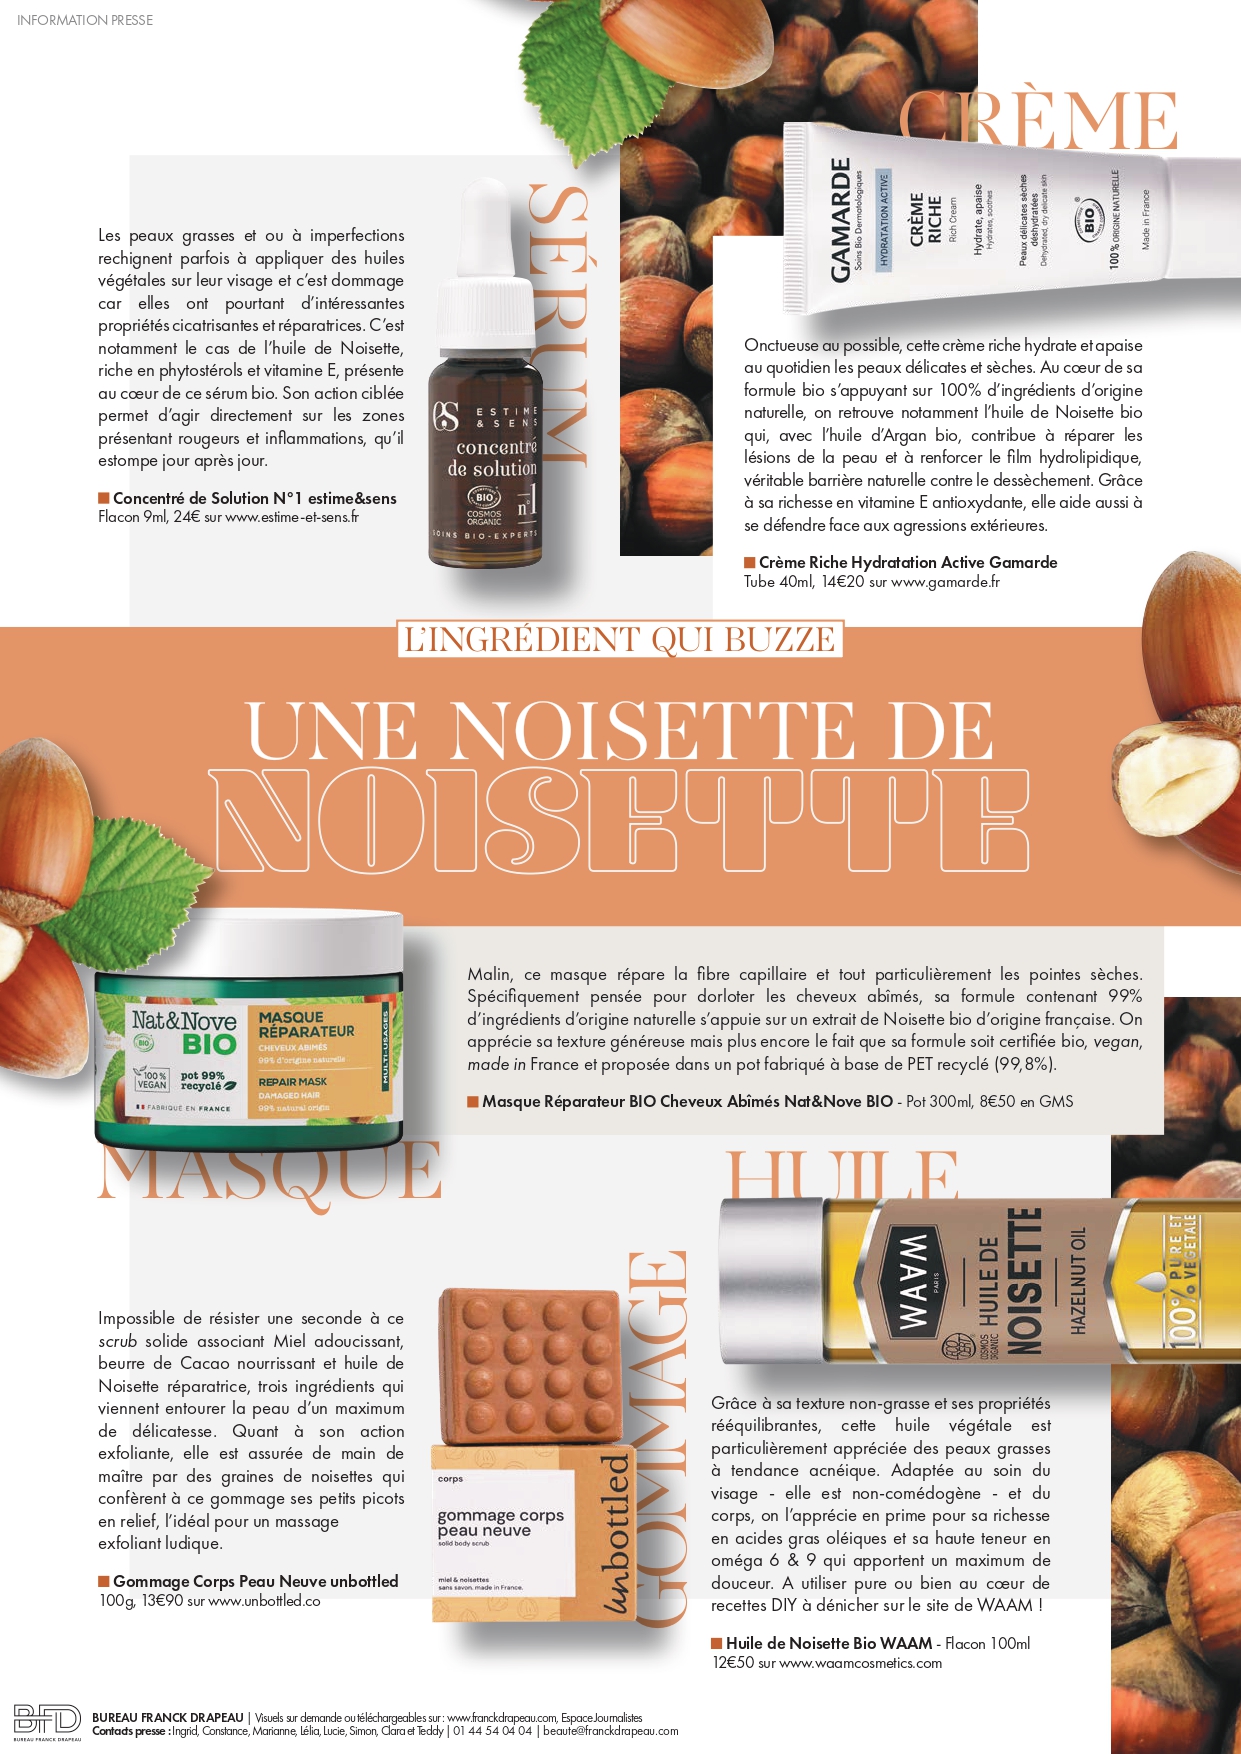 Newsletter | L’ingrédient qui buzze : la Noisette